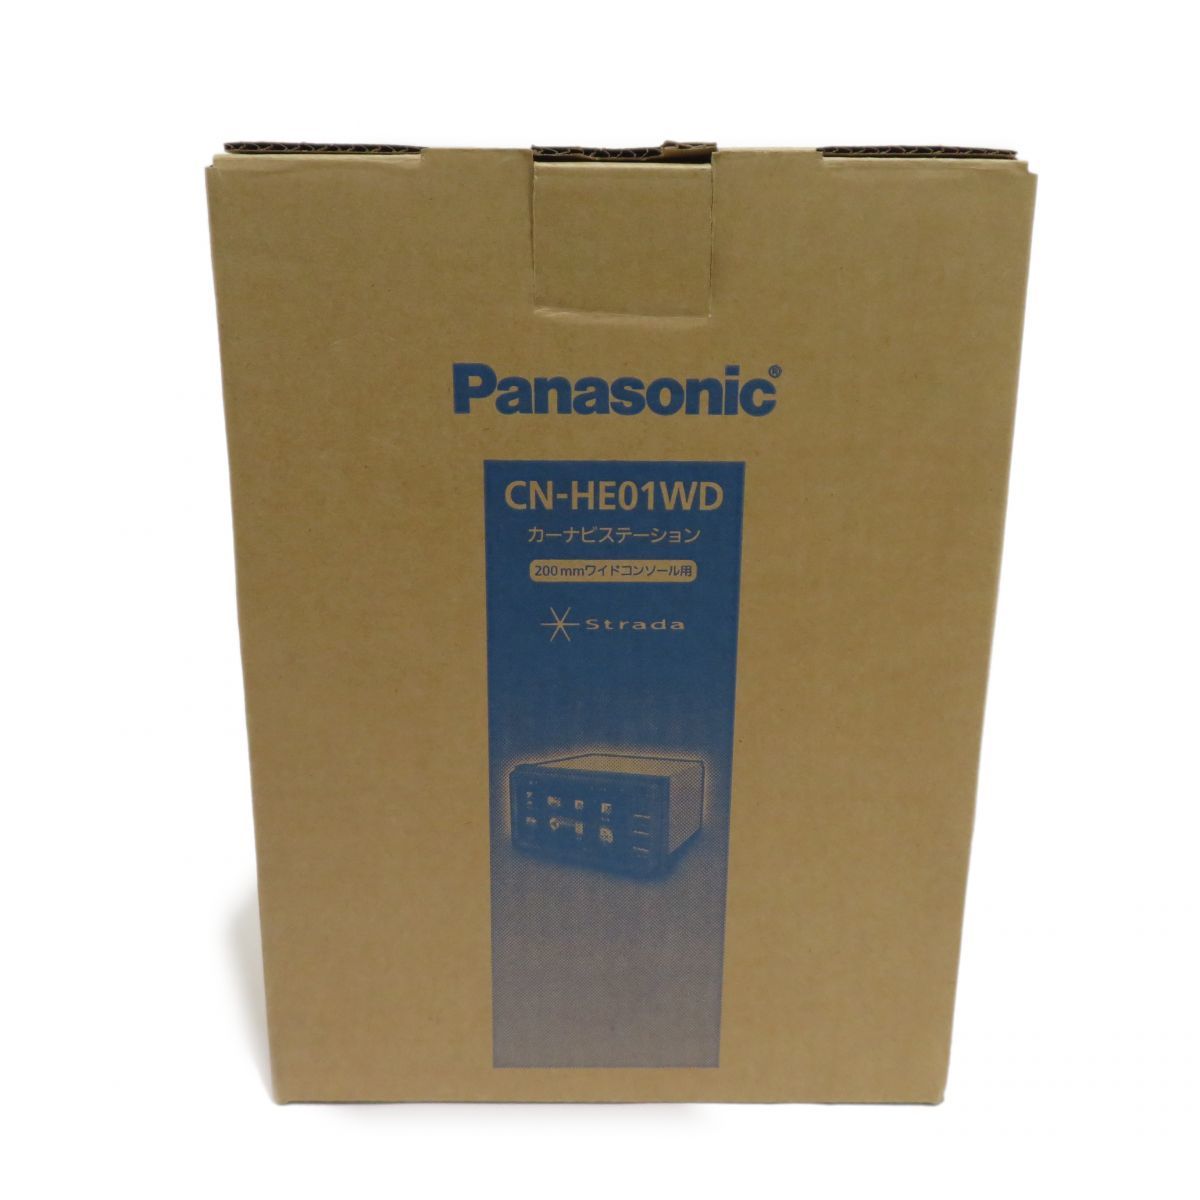 新品☆Panasonic CN-HE01WD カーナビ 200mm パナソニック ネット公式